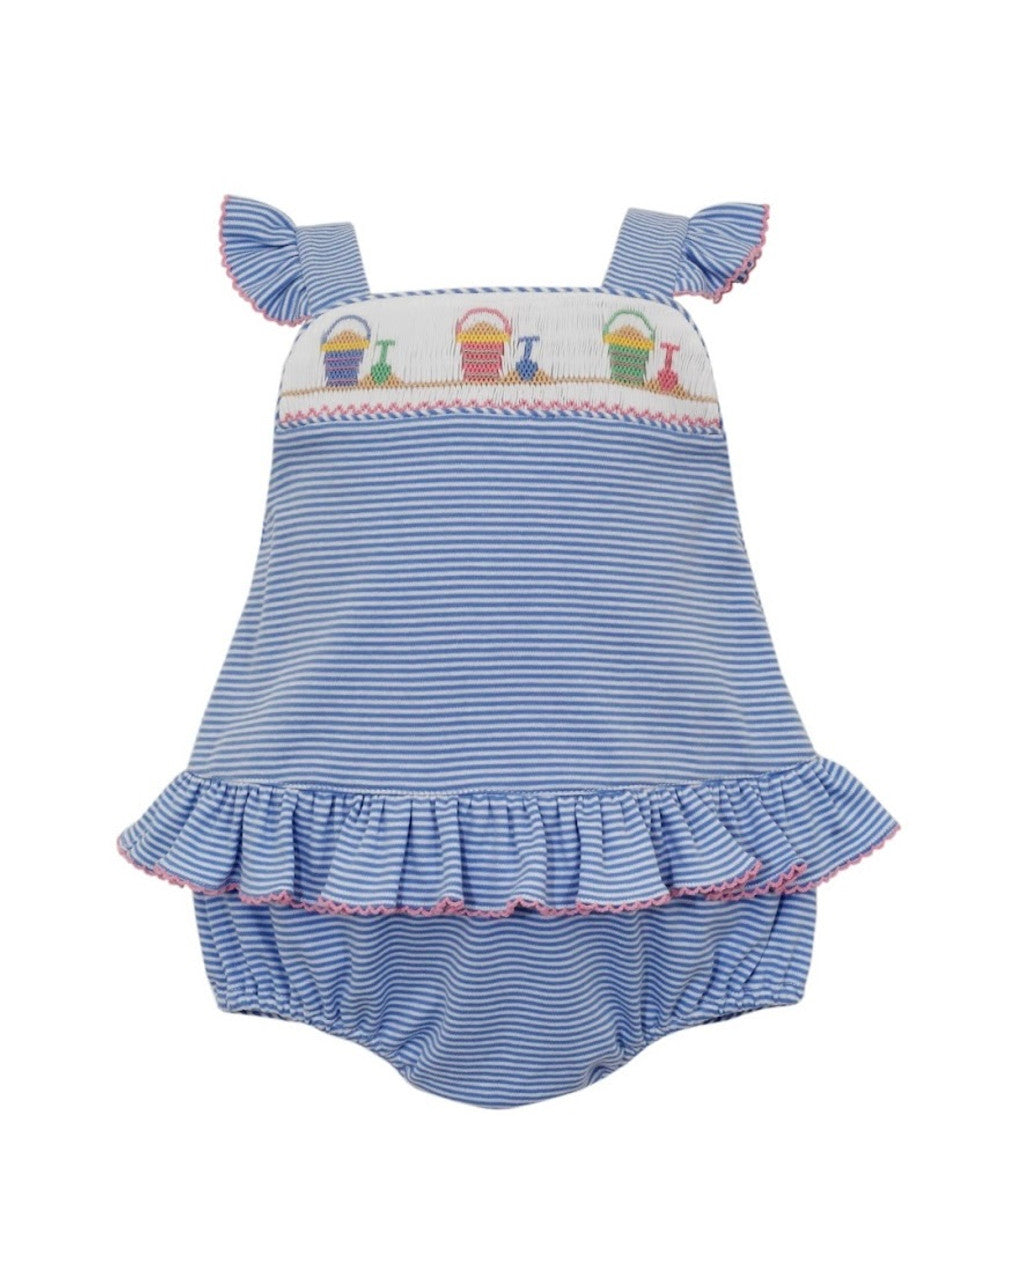 Sand Pails - Periwinkle Blue Stripe Knit Girls Sunsuit